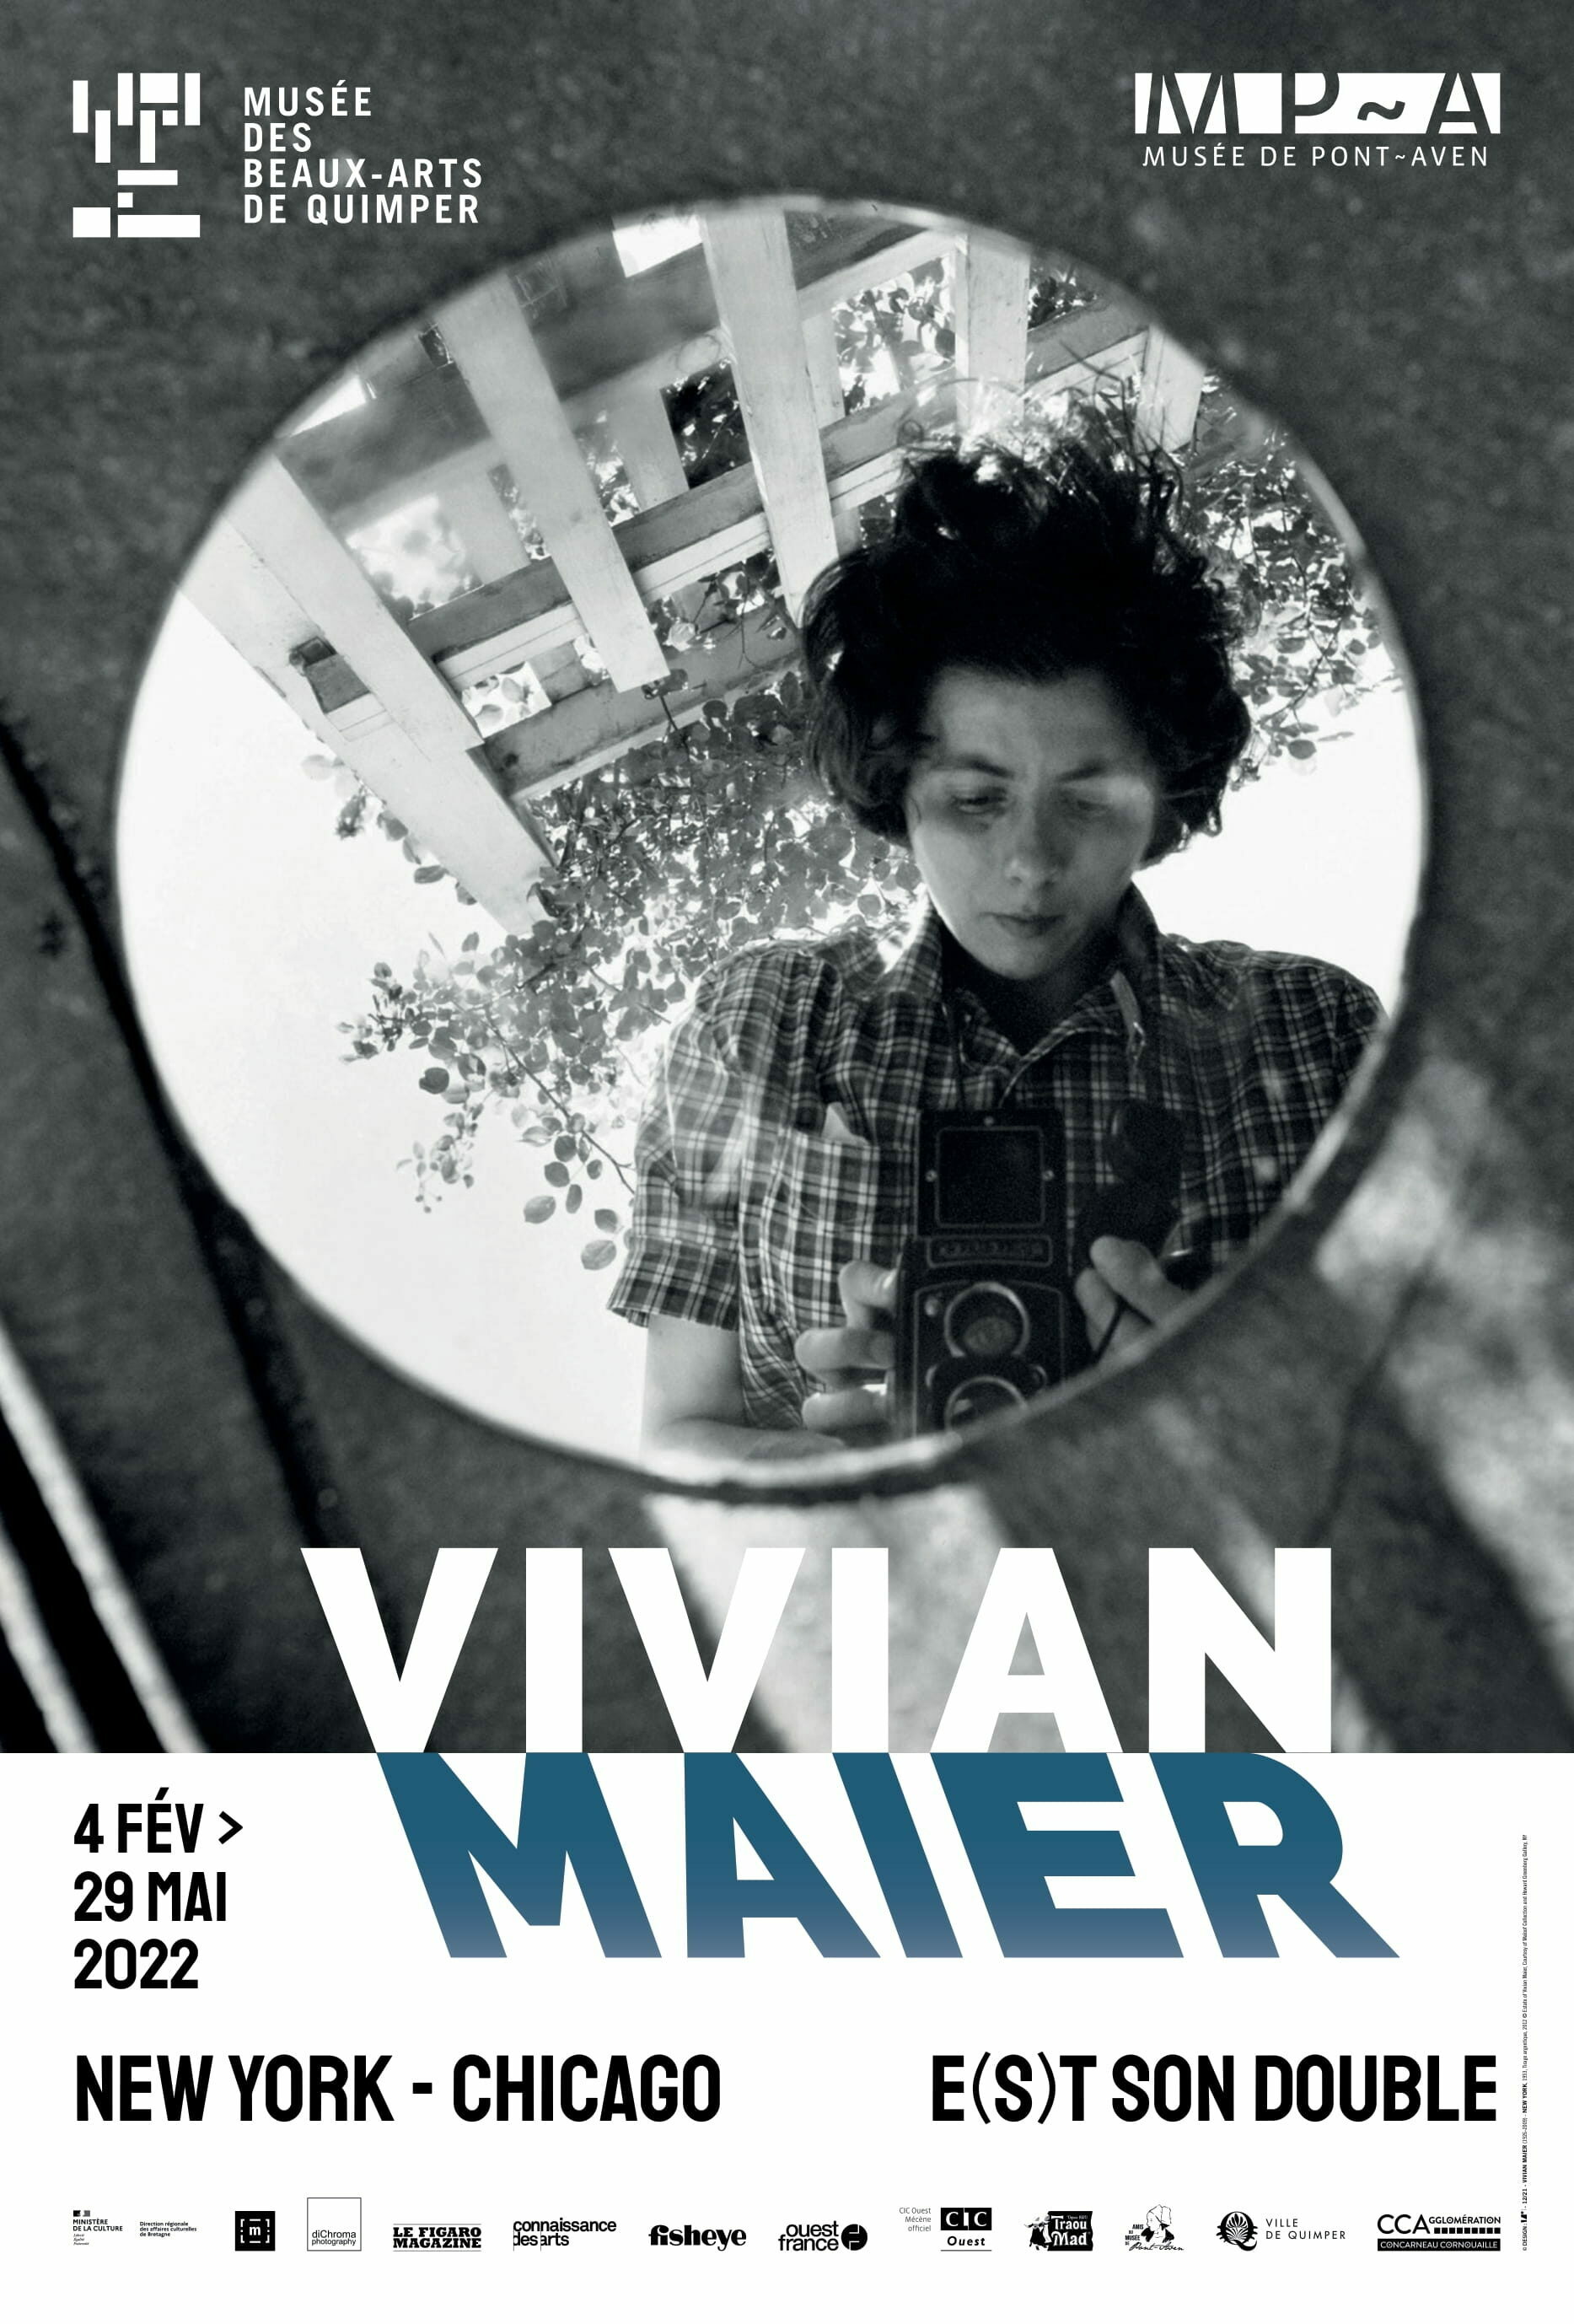 Exposition Vivian Maier e(s)t son double